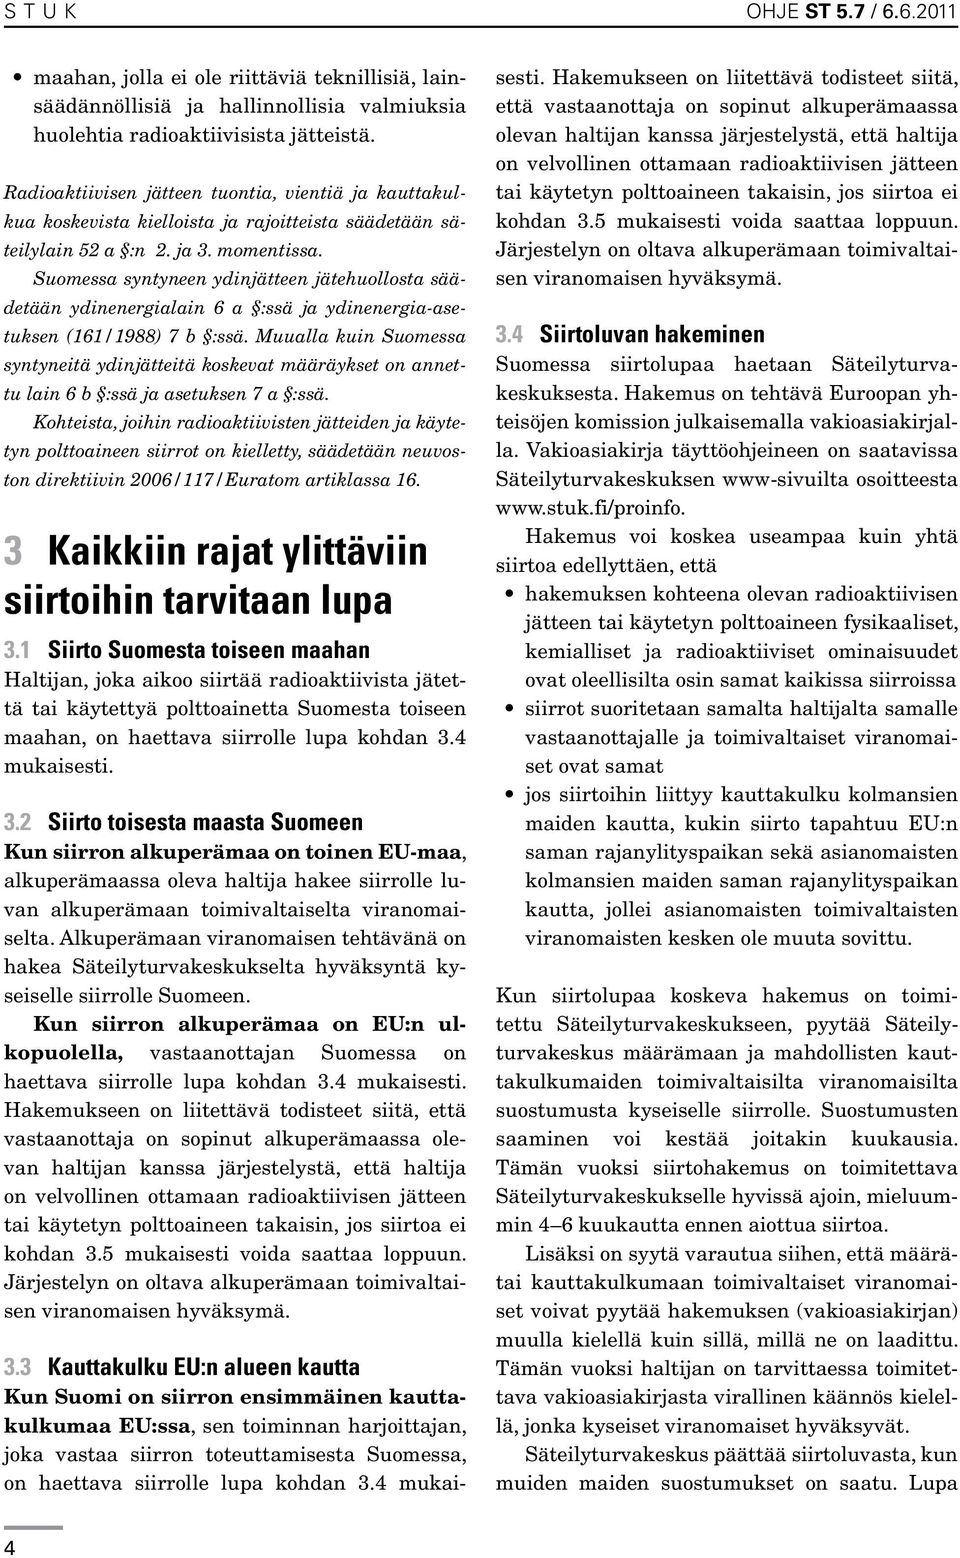 Suomessa syntyneen ydinjätteen jätehuollosta säädetään ydinenergialain 6 a :ssä ja ydinenergia-asetuksen (161/1988) 7 b :ssä.